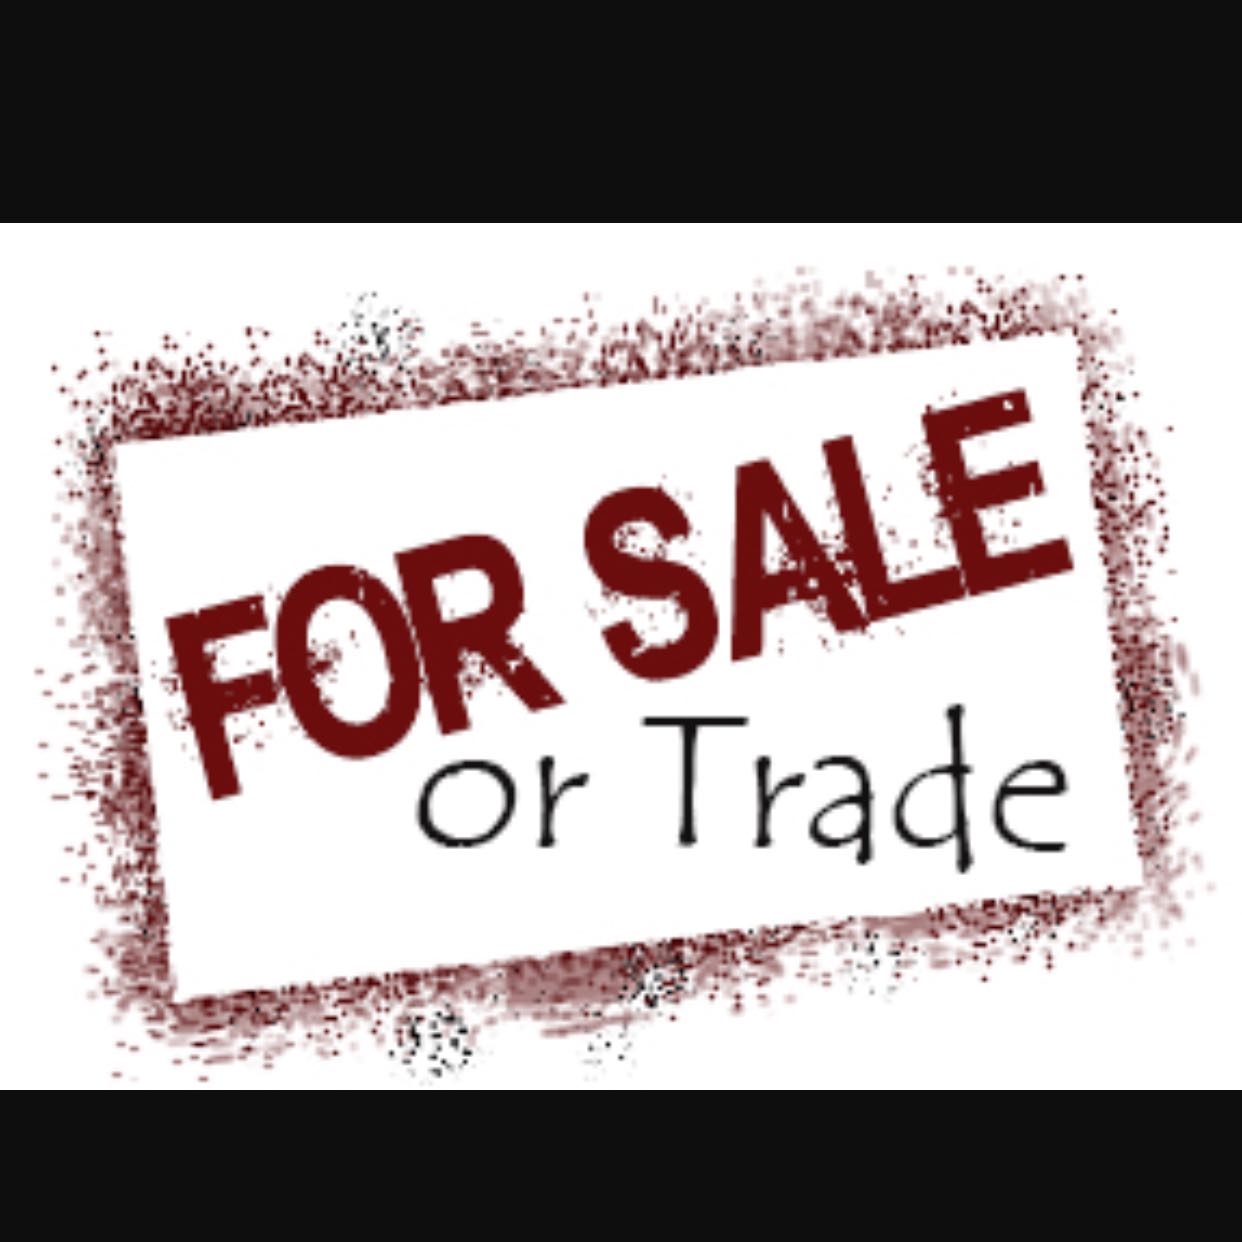 Trade sales